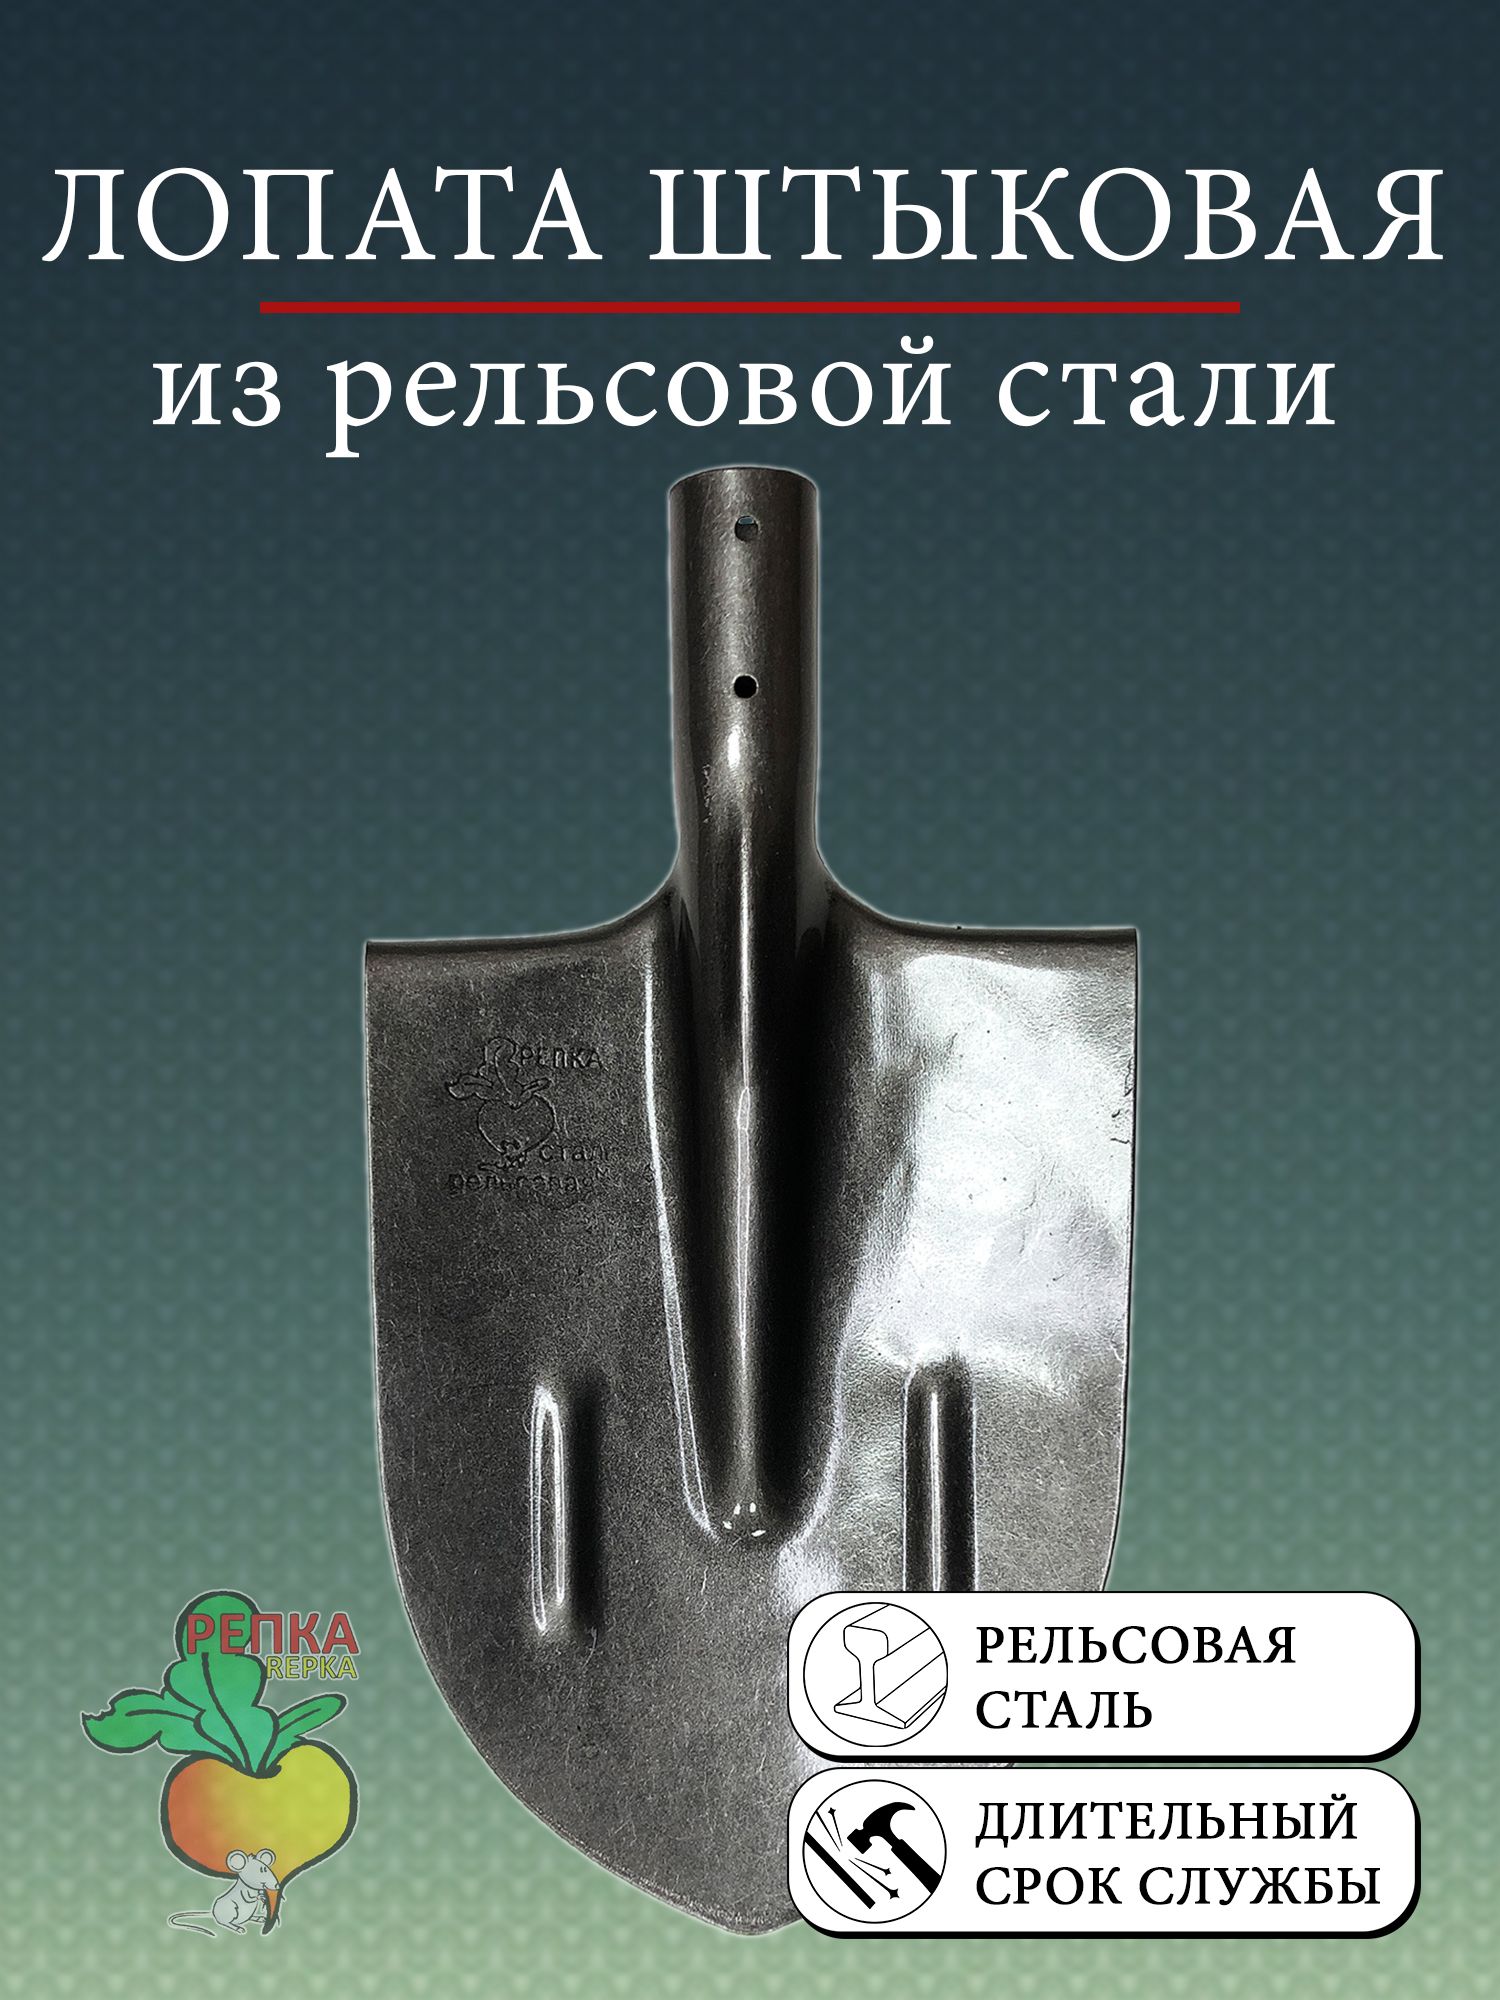 Чудо лопата «Землекоп - 6» | mountainline.ru